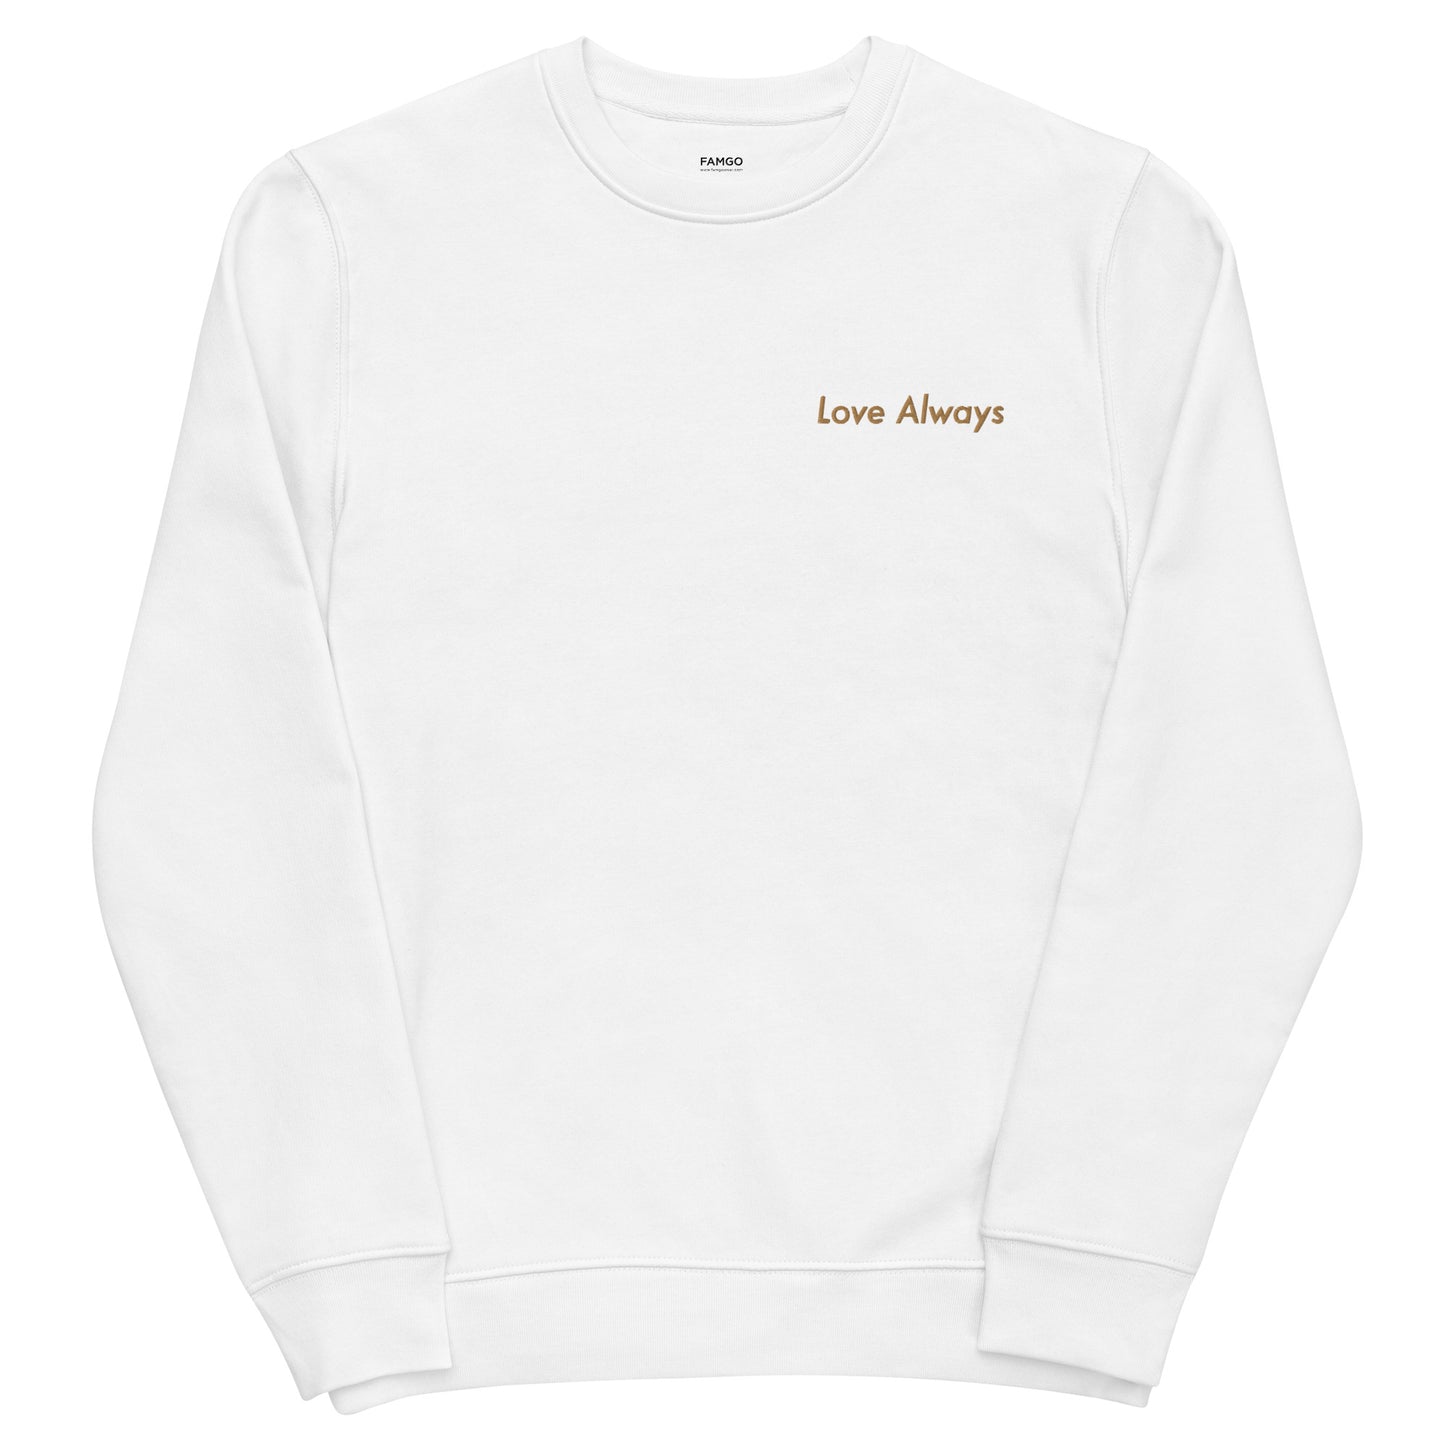 Love Always Men's Organic Cotton Sweatshirt